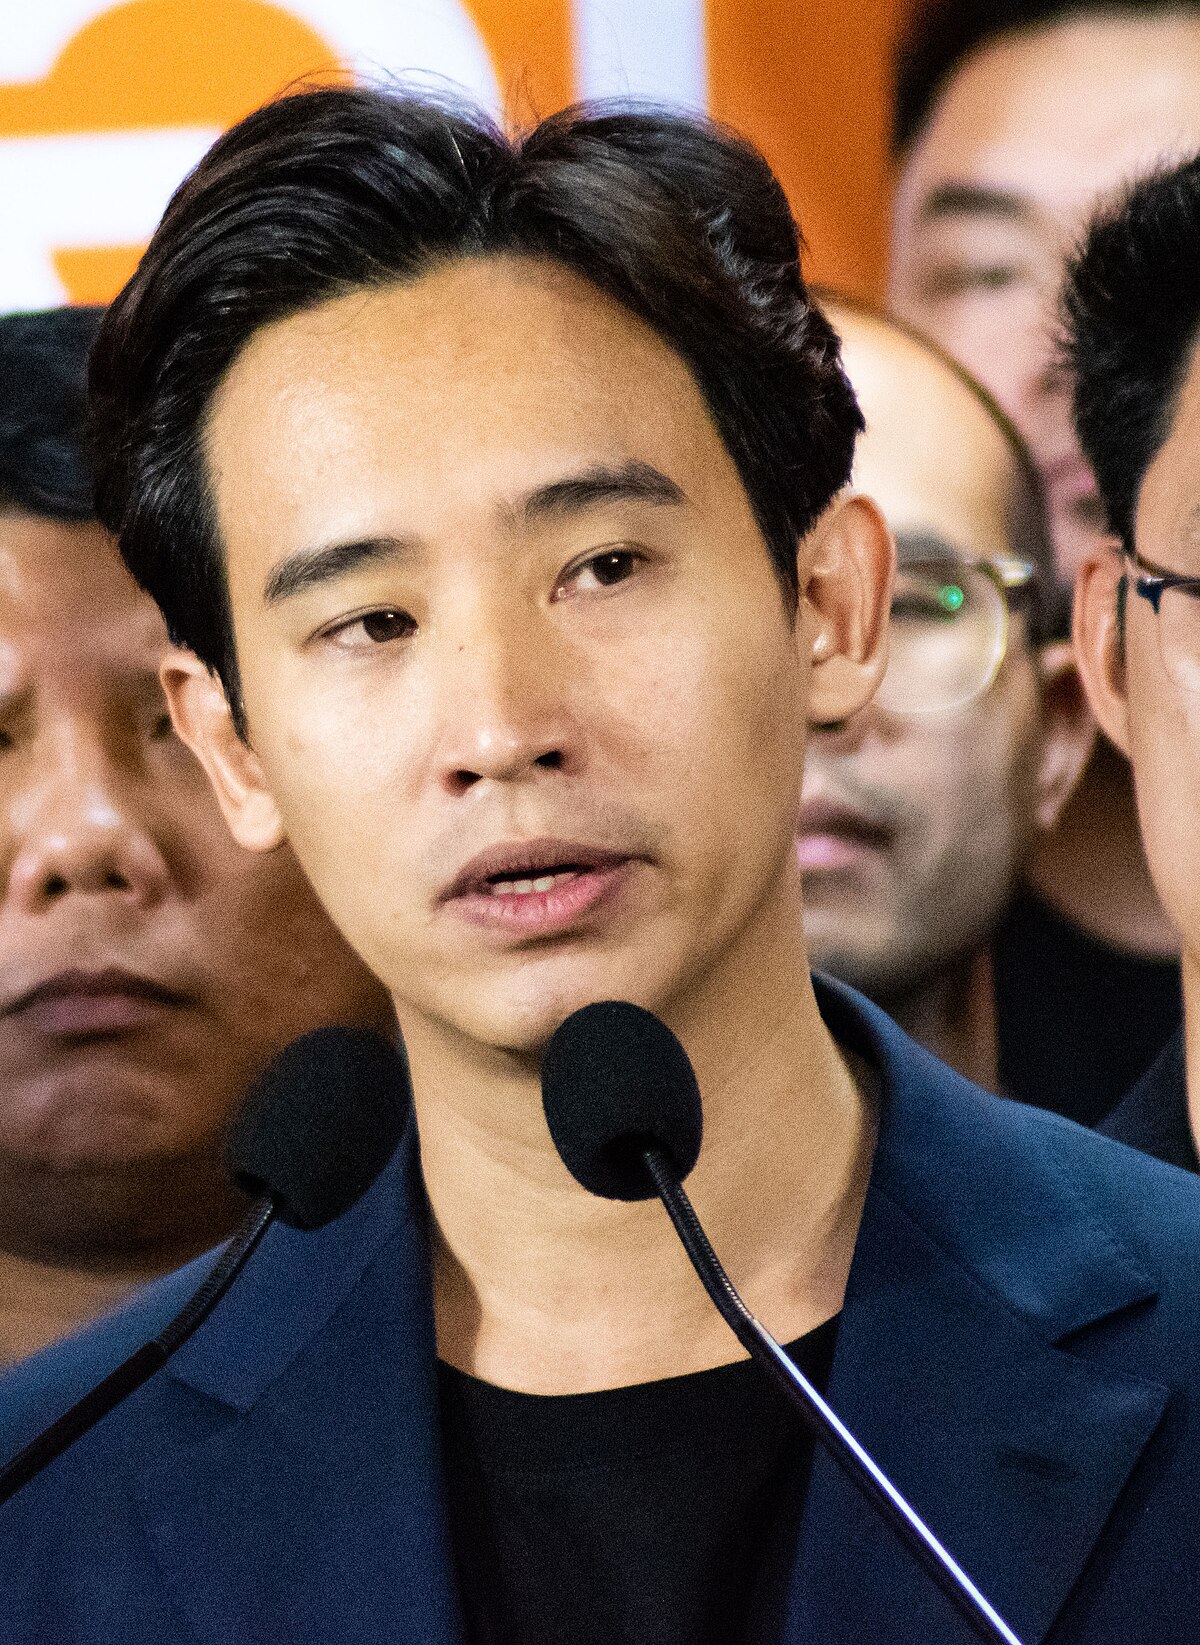 Vencedores das eleições na Tailândia enfrentam possivel dissolução após decisão da Lei do Insulto Real